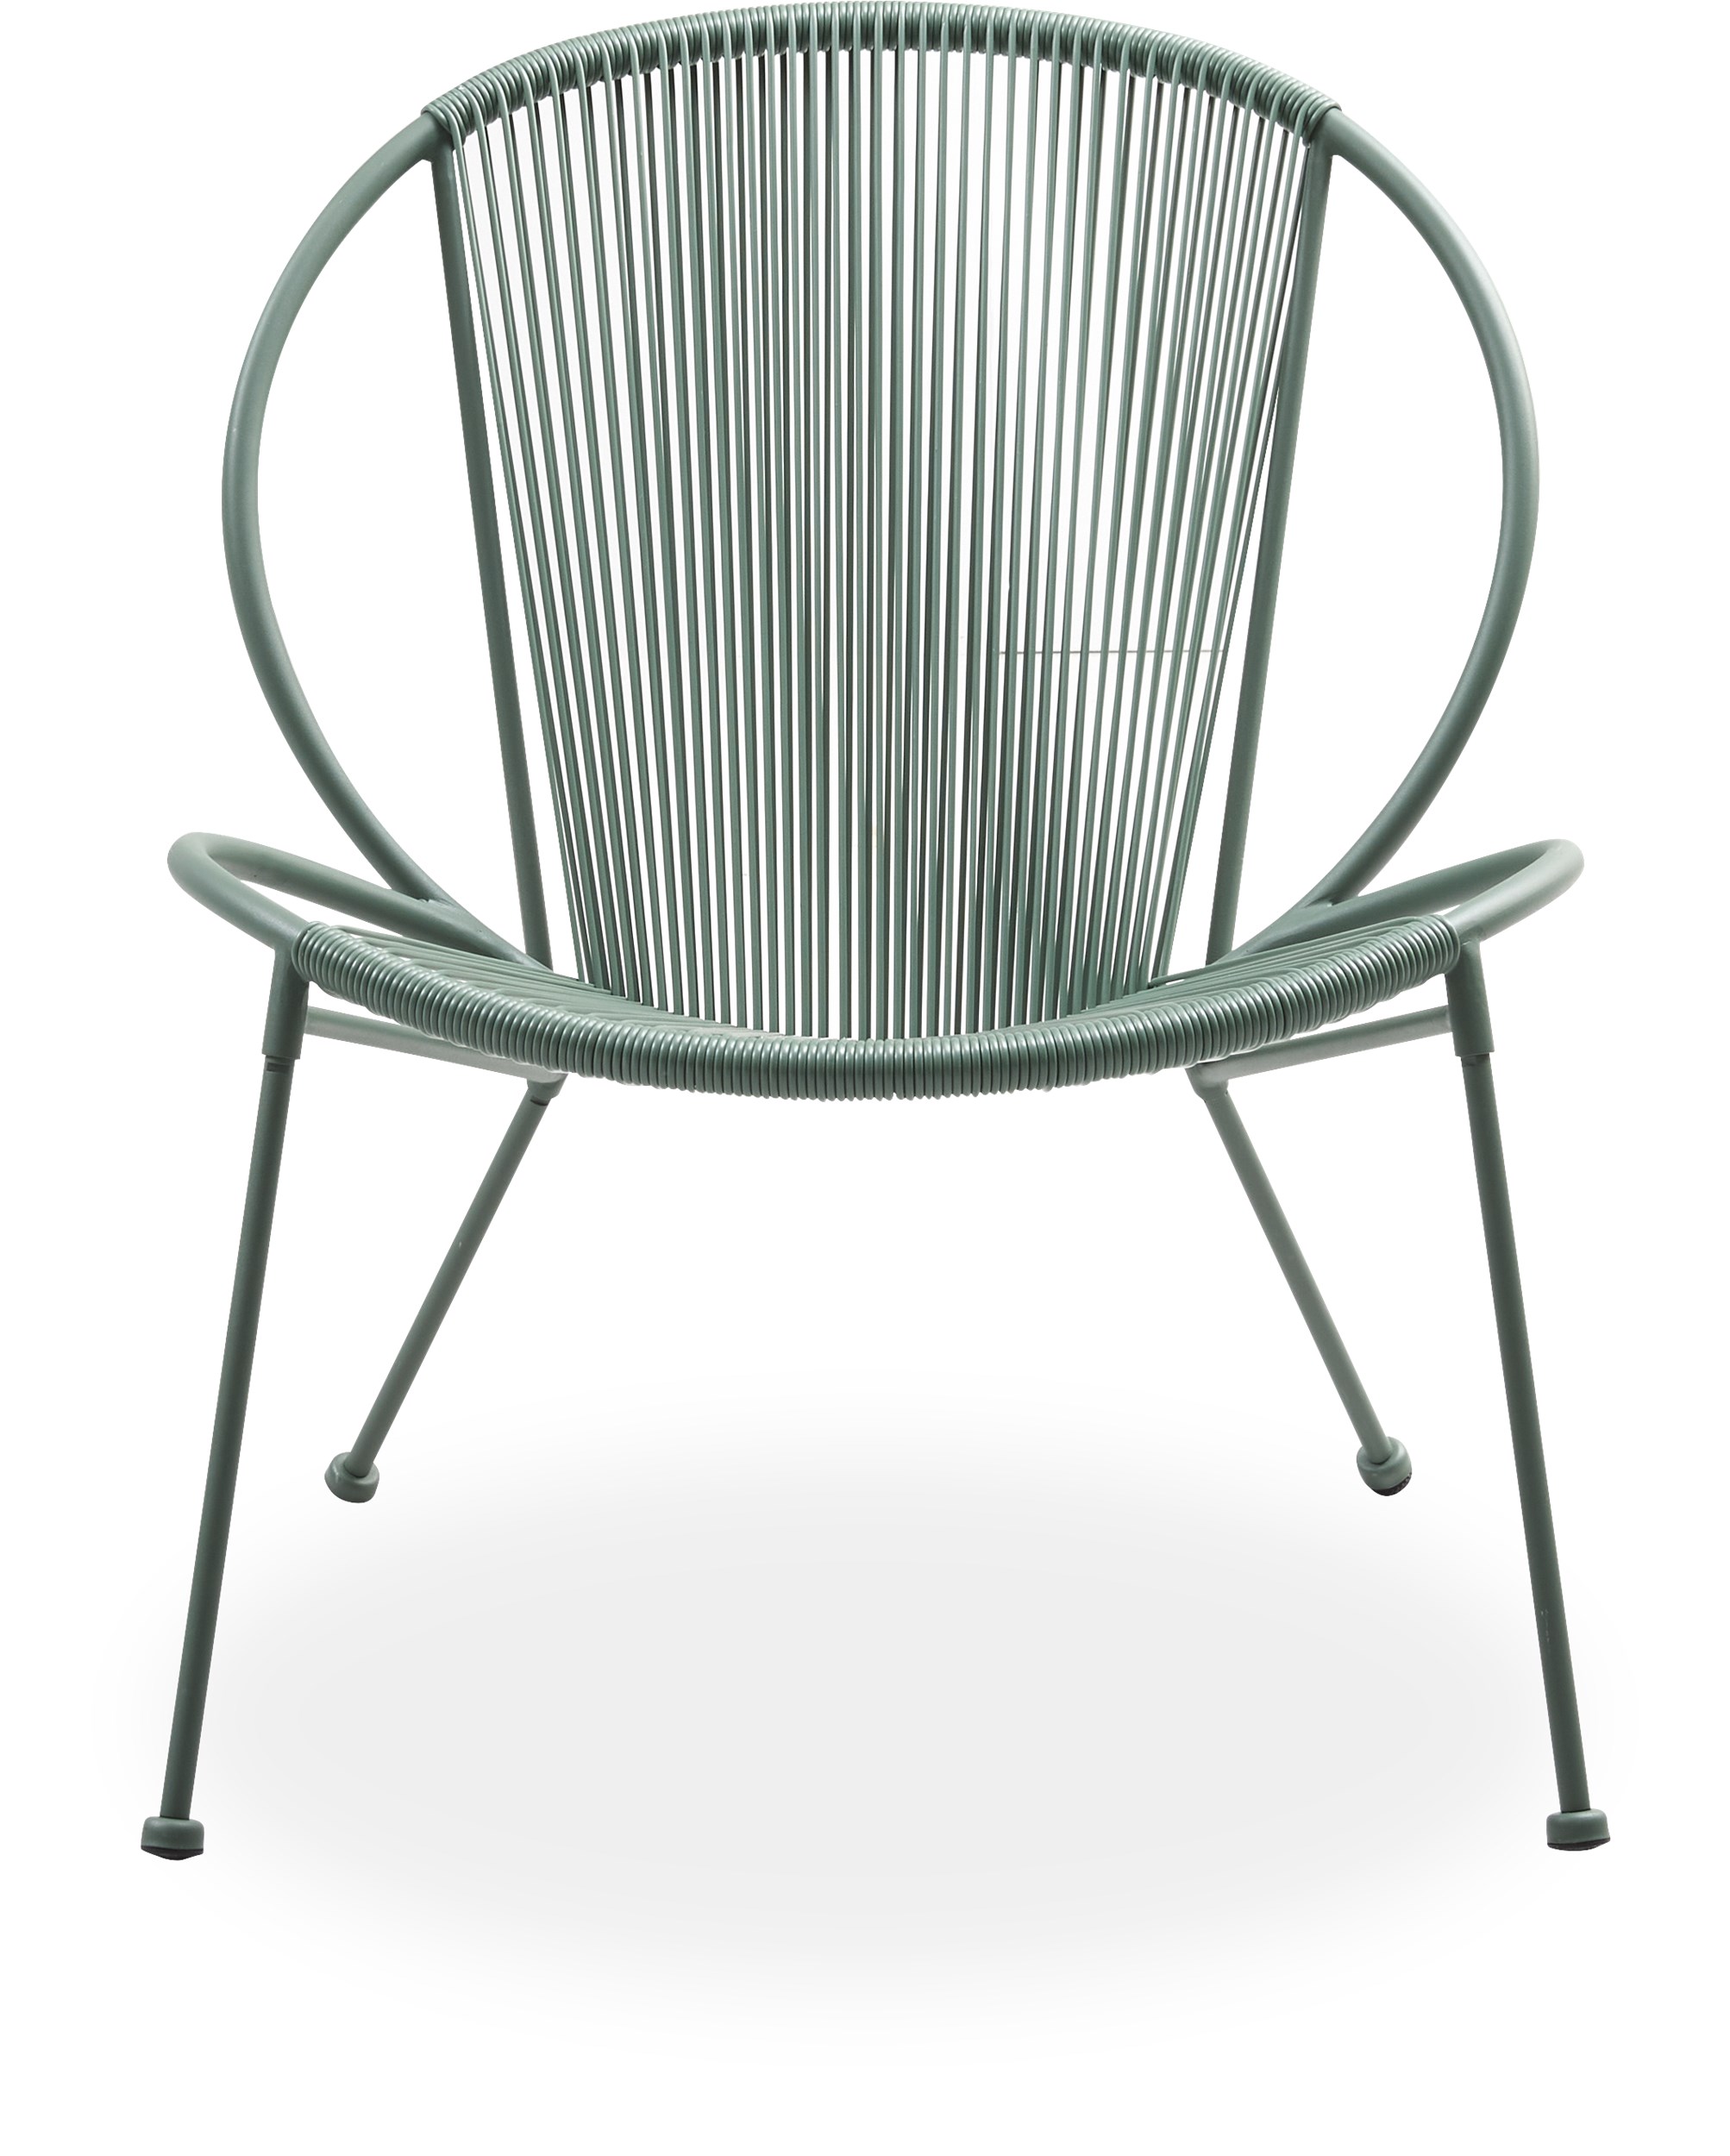 Milana Loungehavestol - Sæde/ryg i støvet grøn plastik og stel i støvet grøn pulverlakeret metal